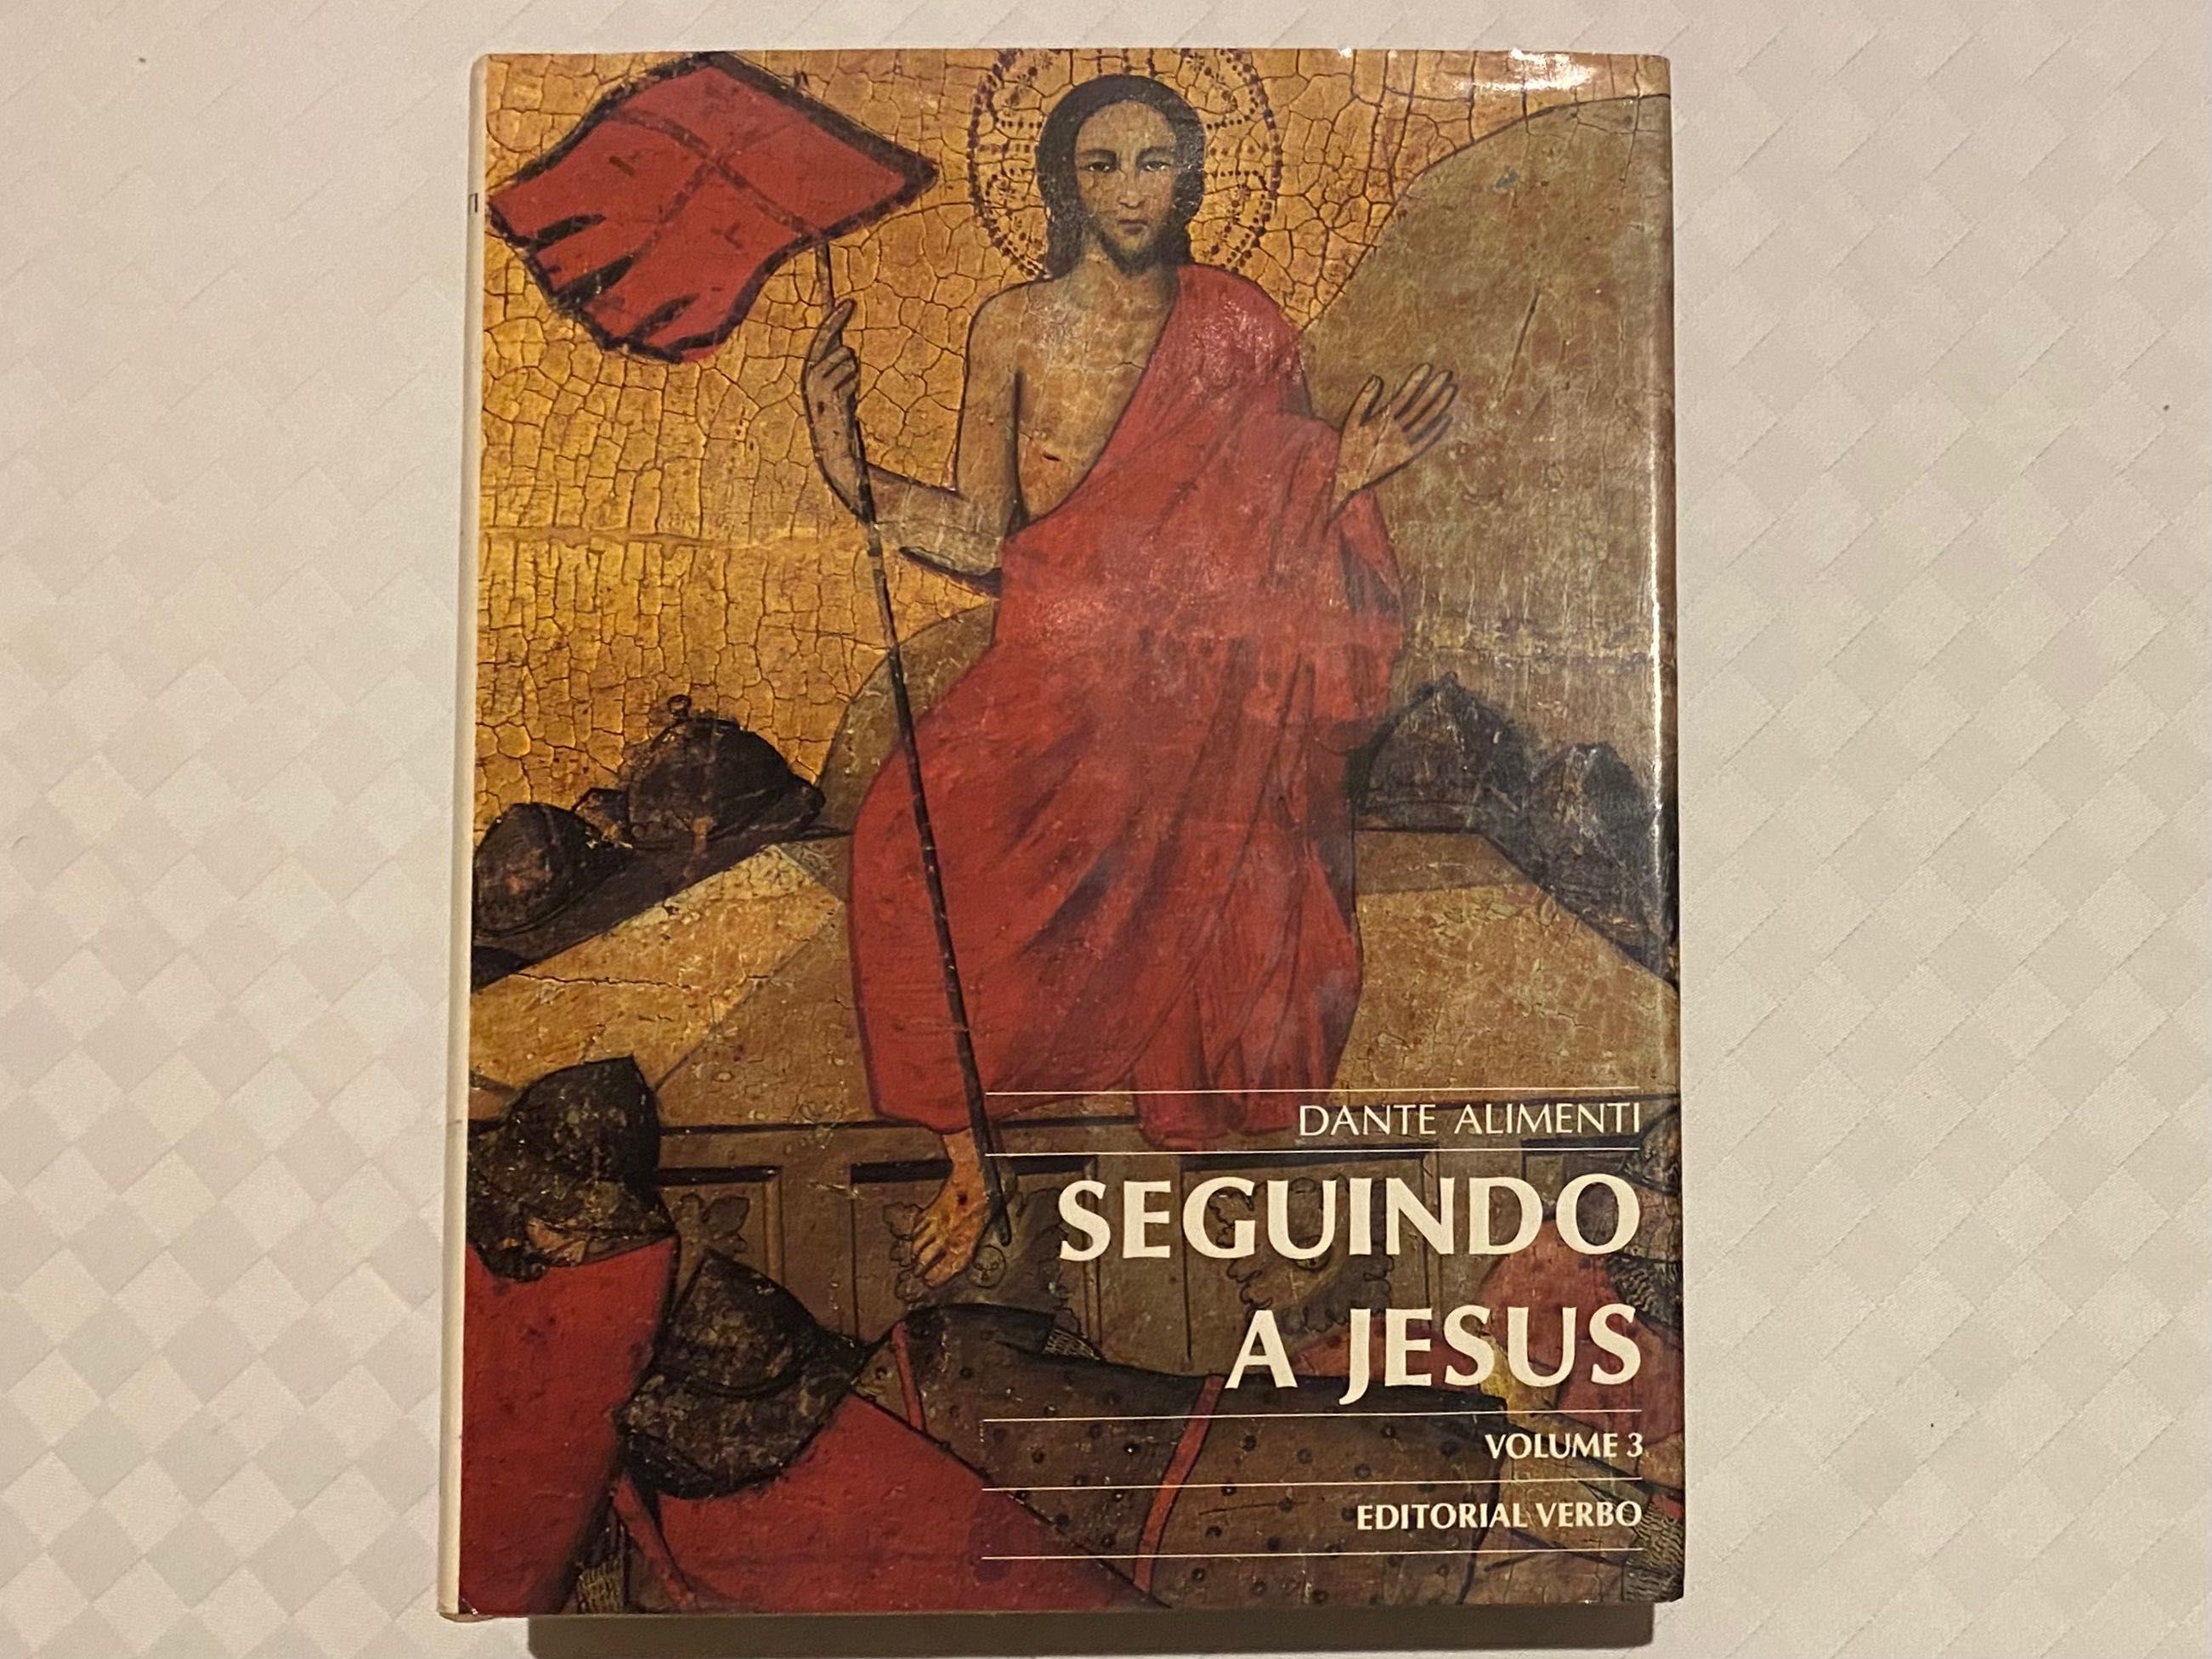 Seguindo a Jesus de Dante Alimenti em três volumes